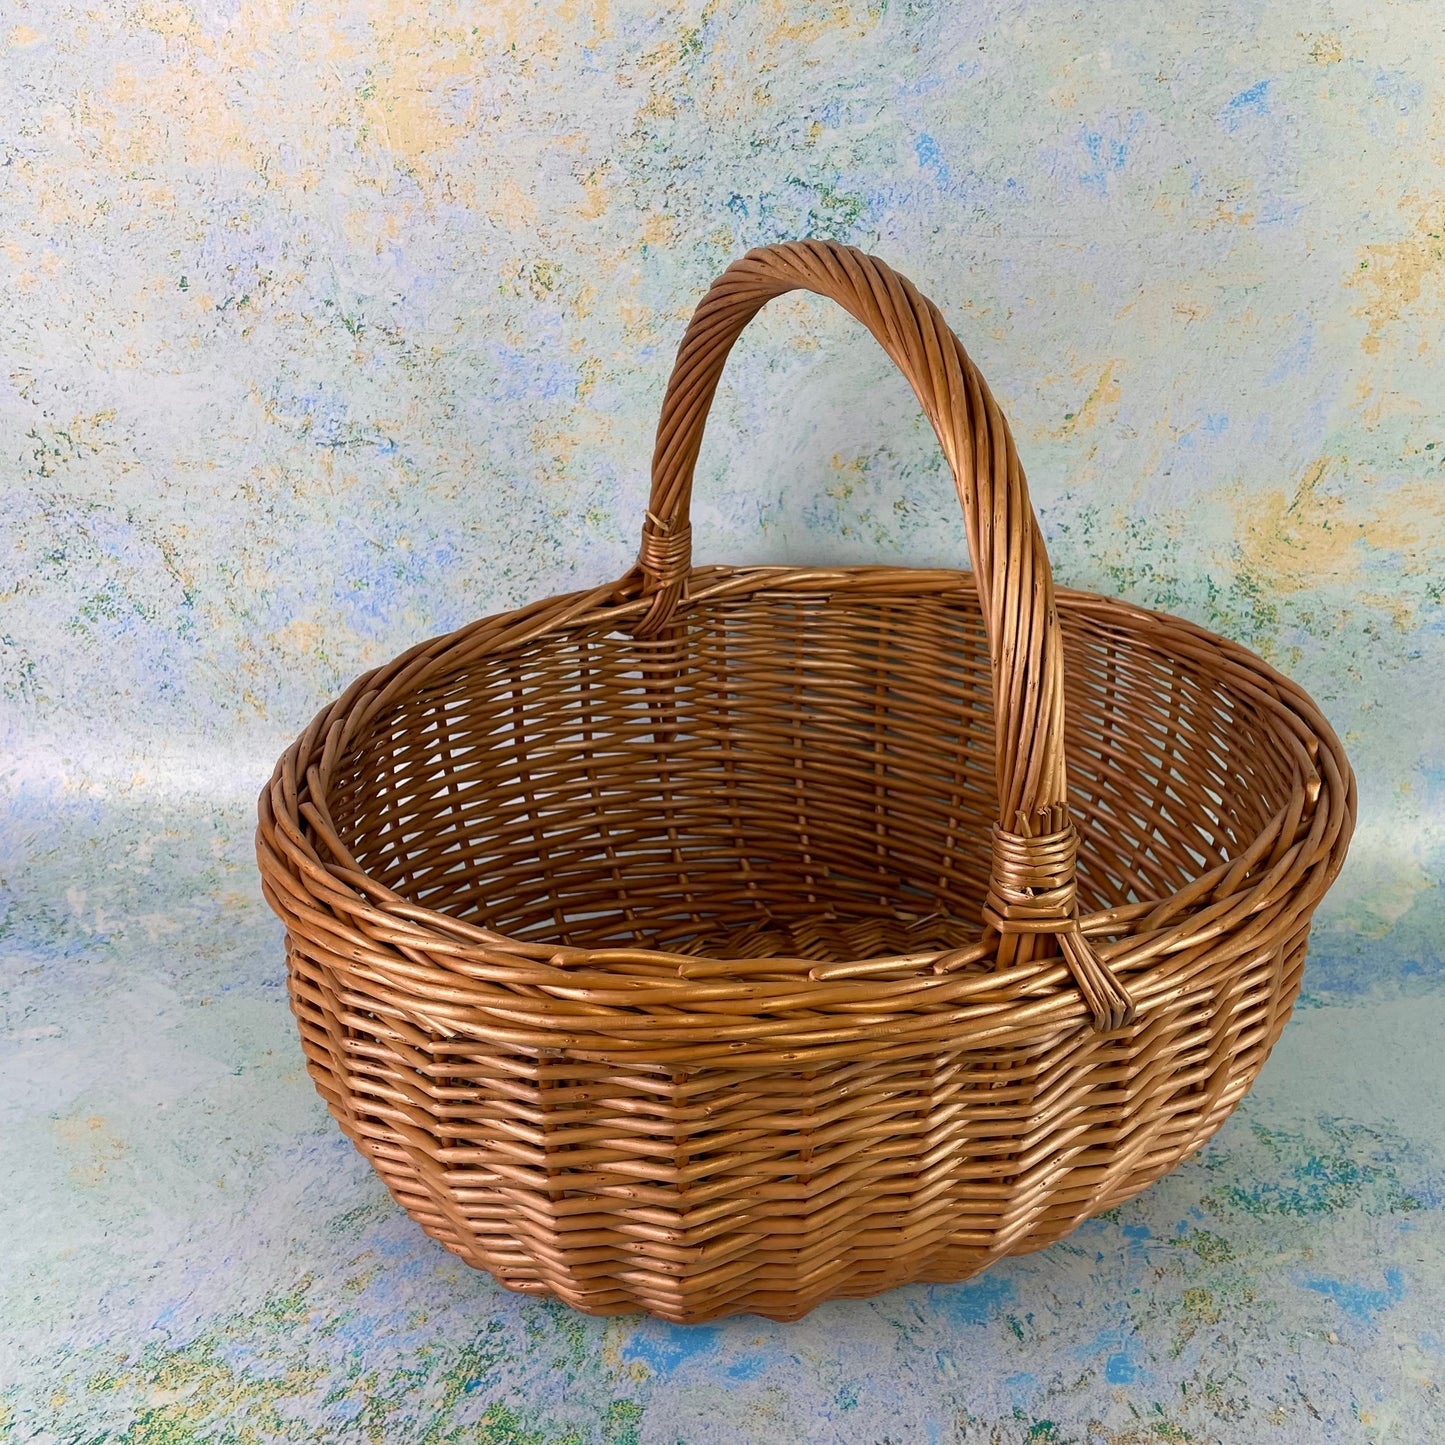 Deluxe Shopping Basket Gift Kit